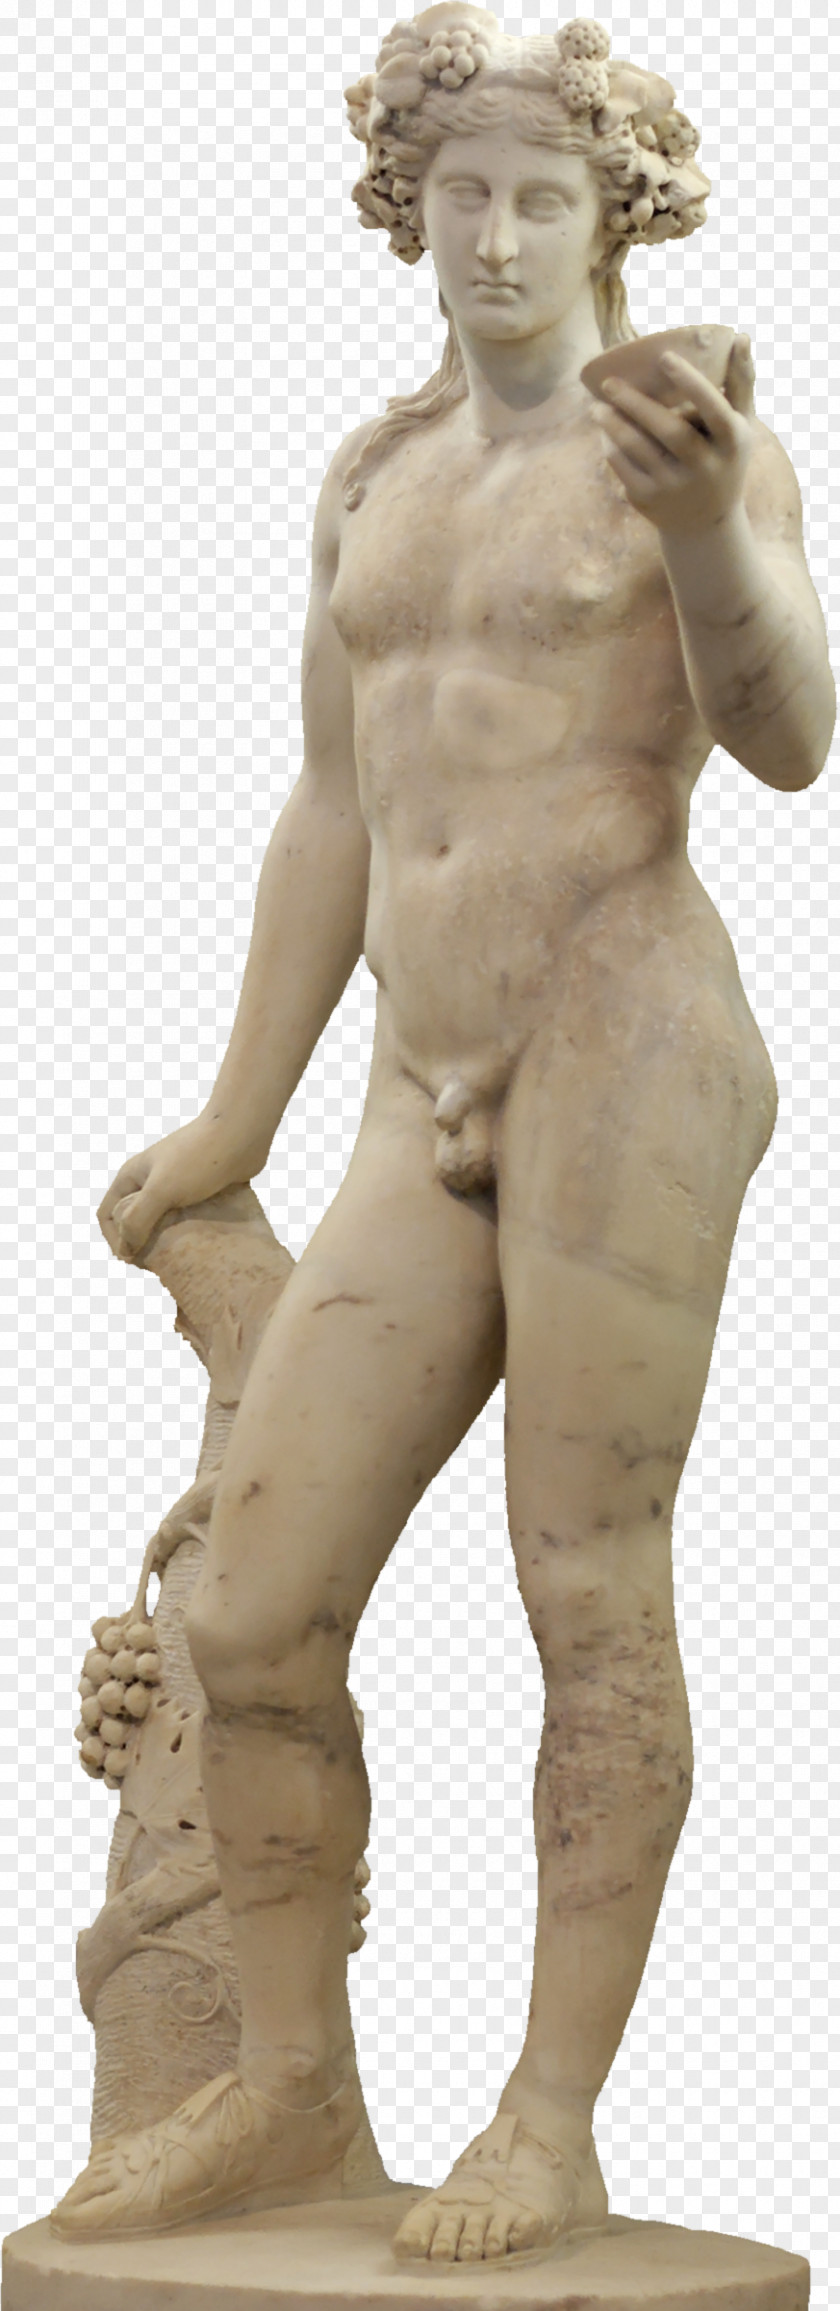 Egyptian Gods Zeus Semele Dionysus Hera Greek Mythology PNG